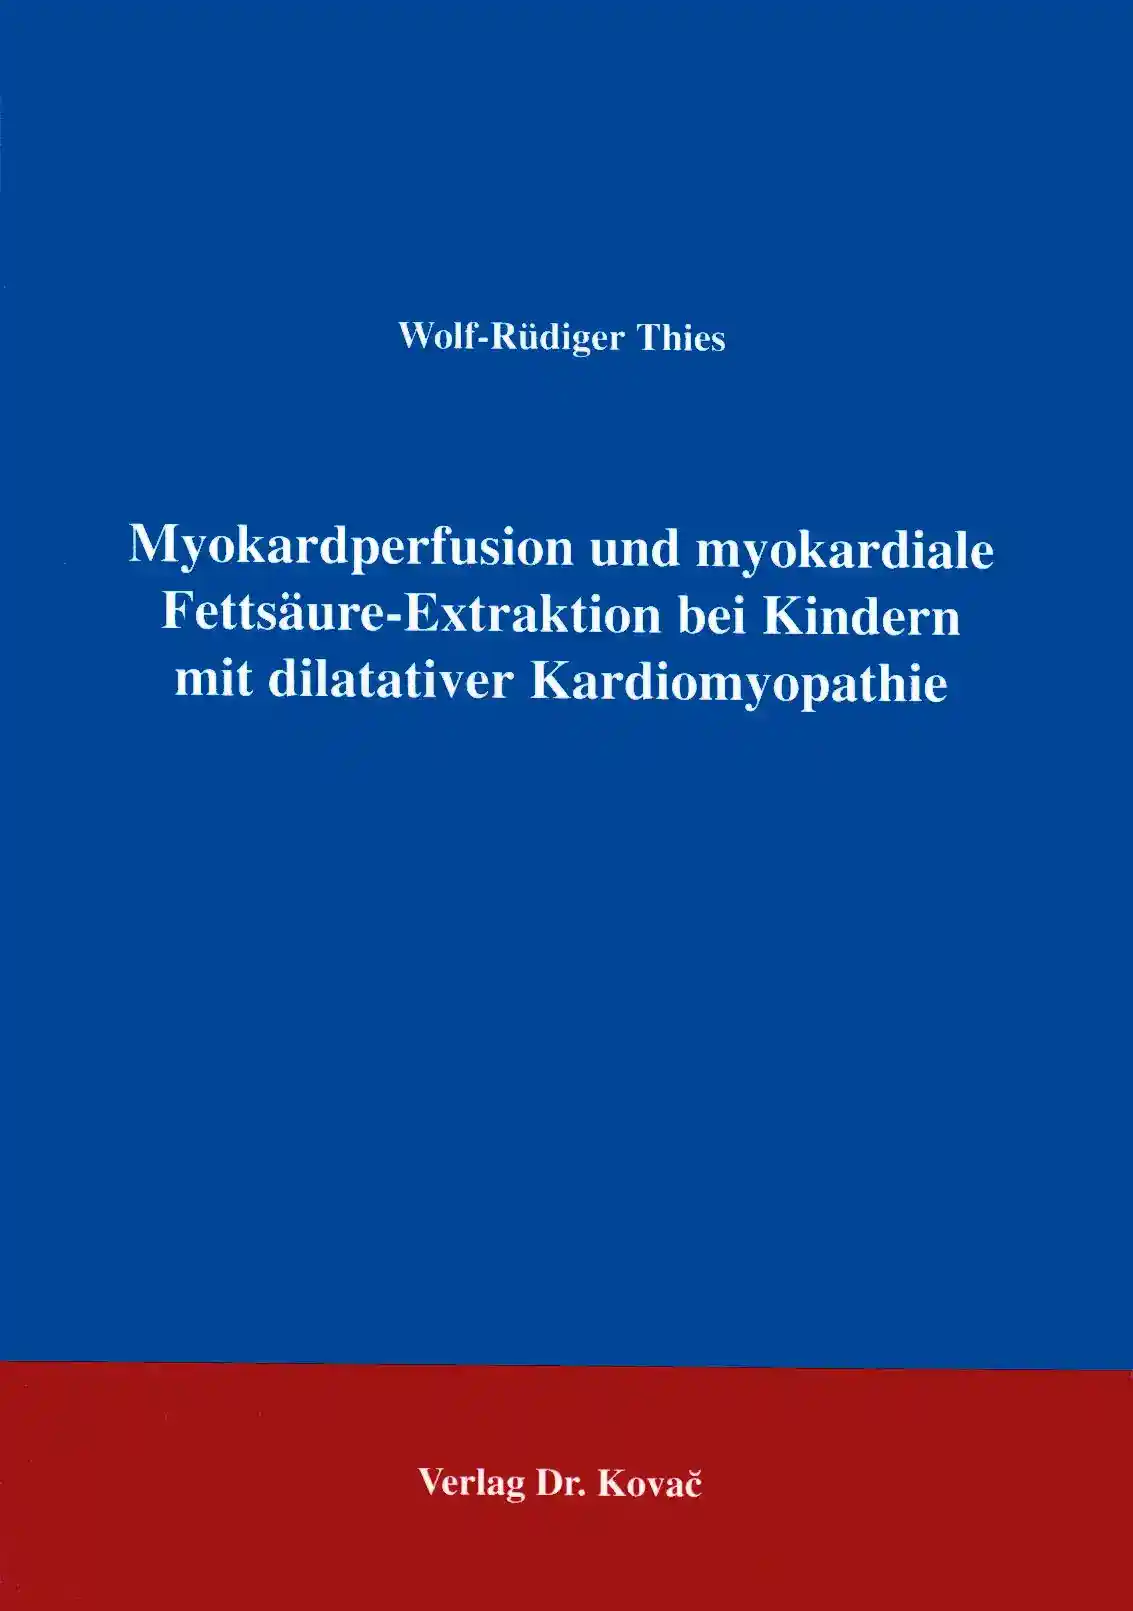 : Myokardperfusion und myokardiale Fettsäure-Extraktion bei Kindern mit dilatativer Kardiomyopathie